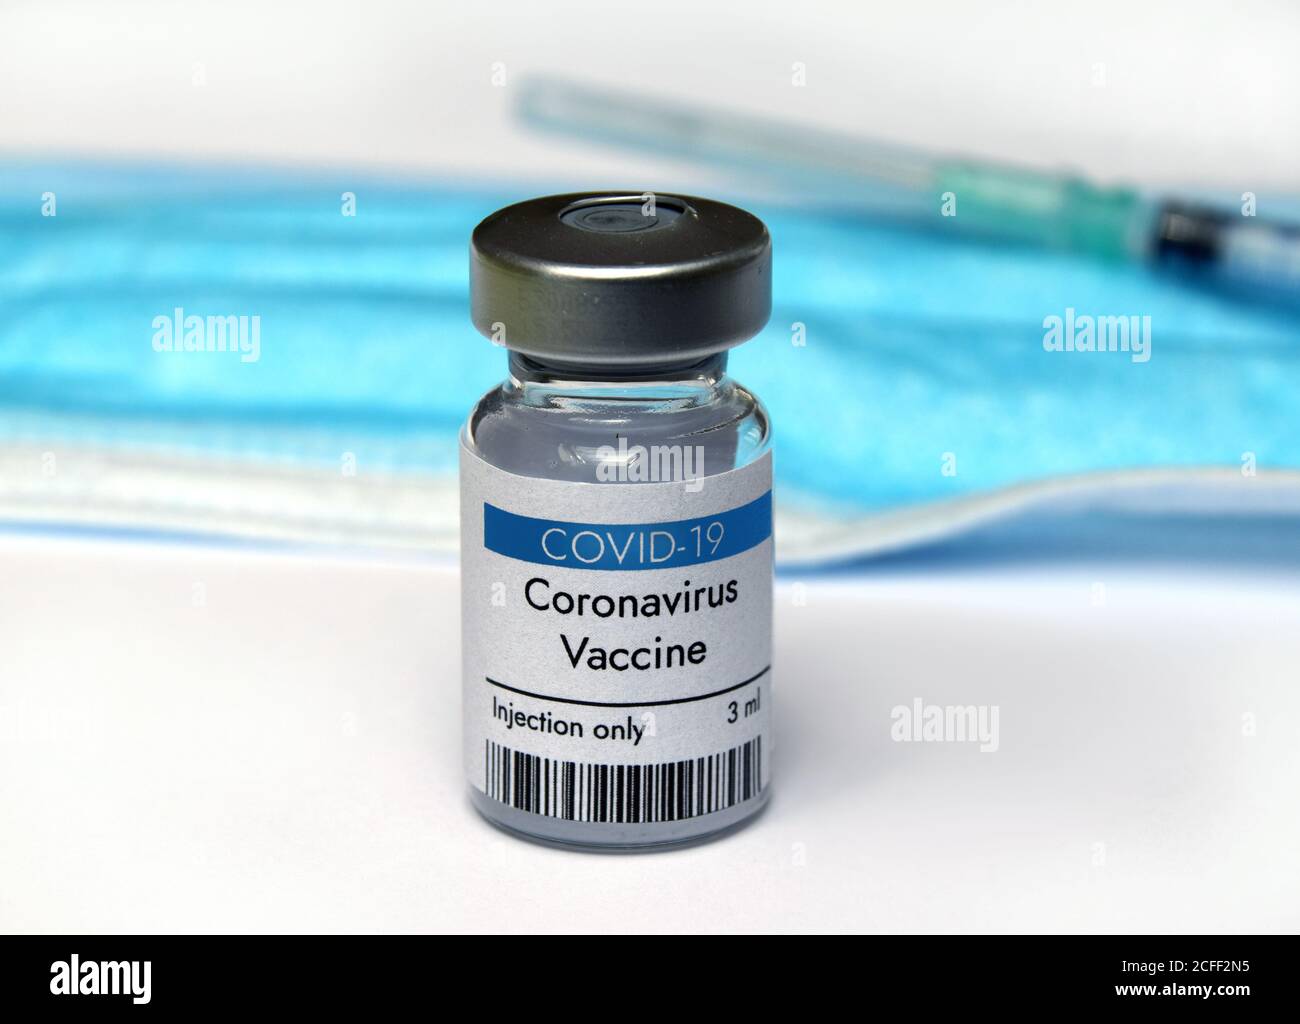 Coronavirus vaccine vial container in hand on white background. Close-up view. Coronavirus vaccine bottle. Stock Photo